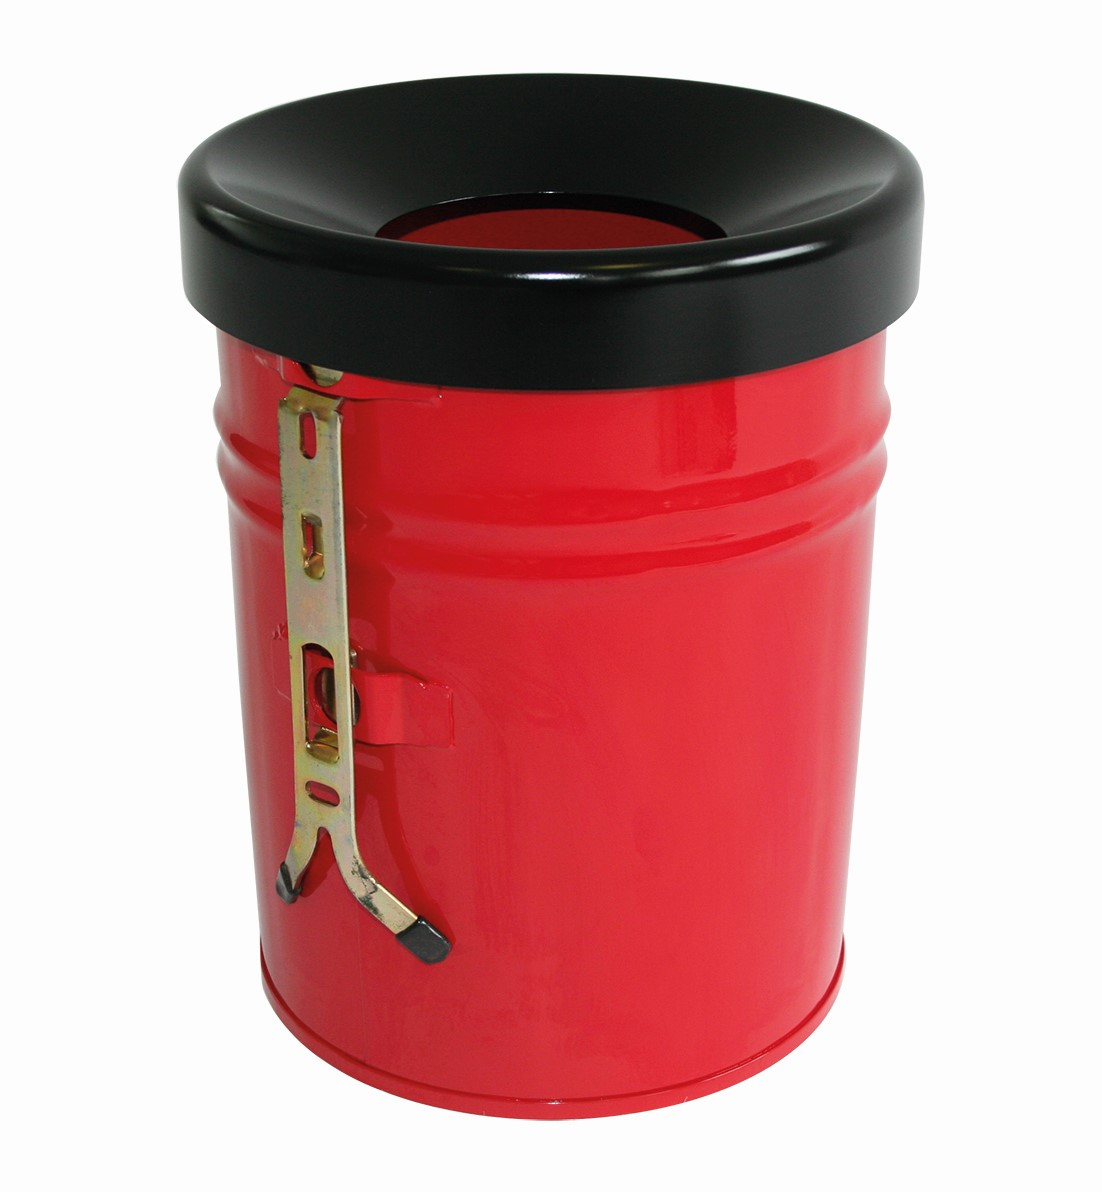 Zelfblussende afvalbak FIRE EX voor wandbevestiging, 24 l, rood, bovendeel zwart  ZOOM